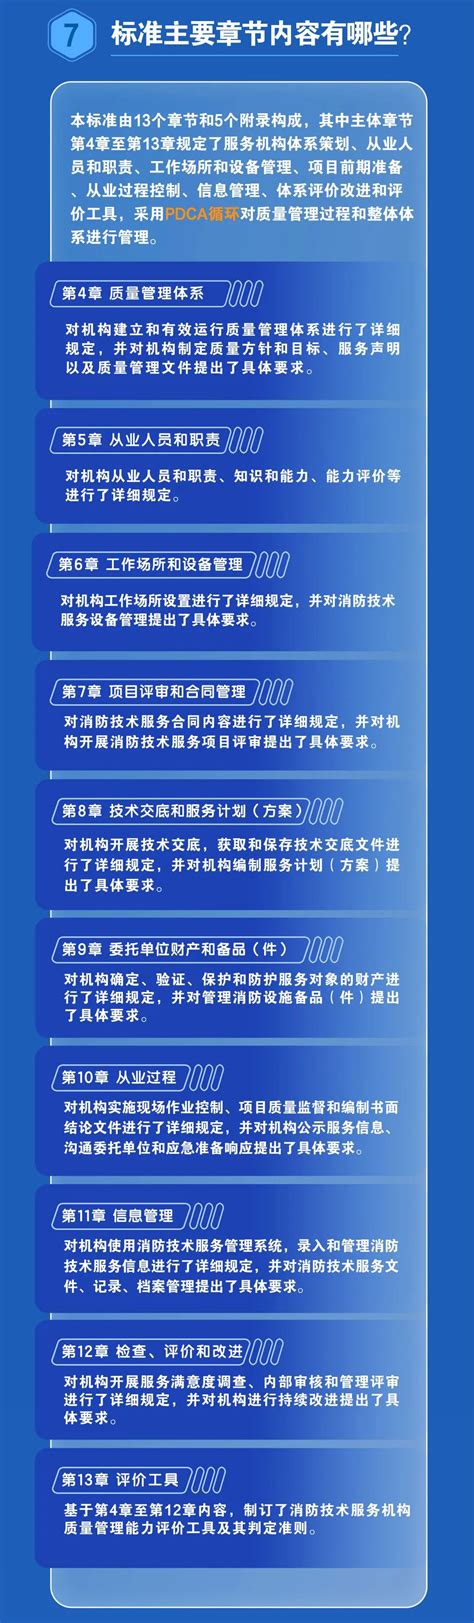 低压配电安装服务方案「上海铭正电力工程供应」 - 水专家B2B